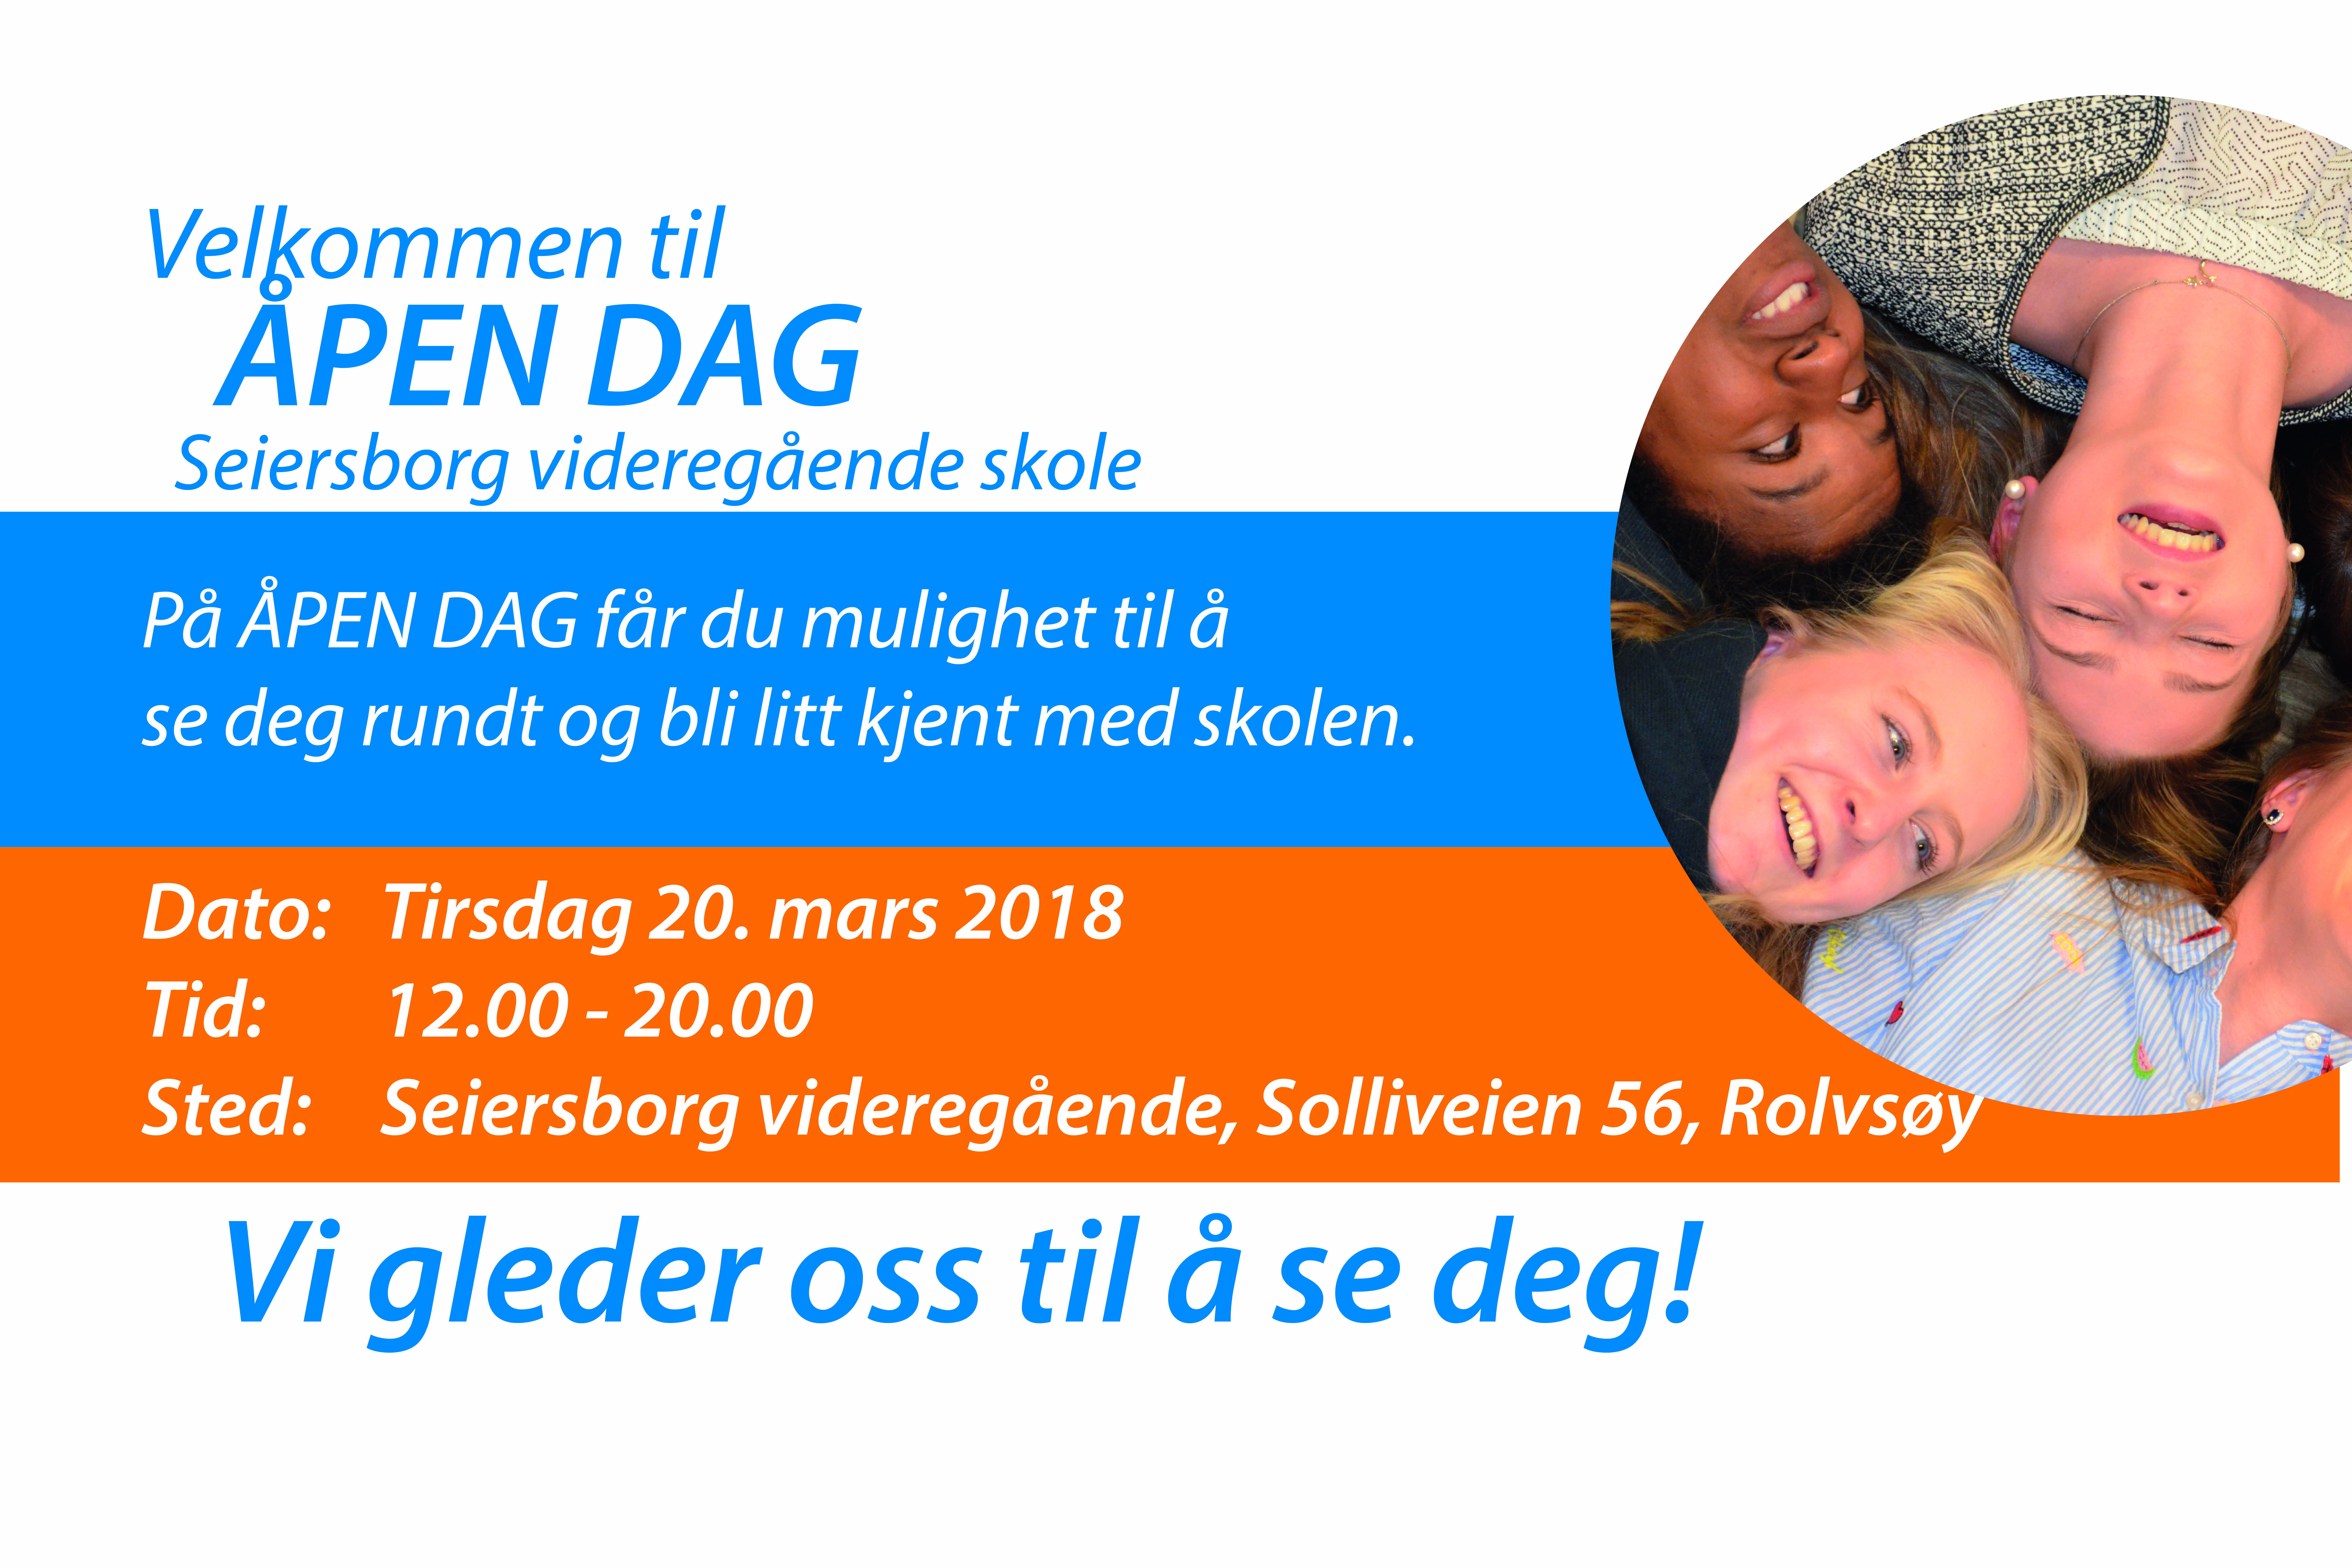 Featured image for “Velkommen til ÅPEN DAG på Seiersborg videregående skole”